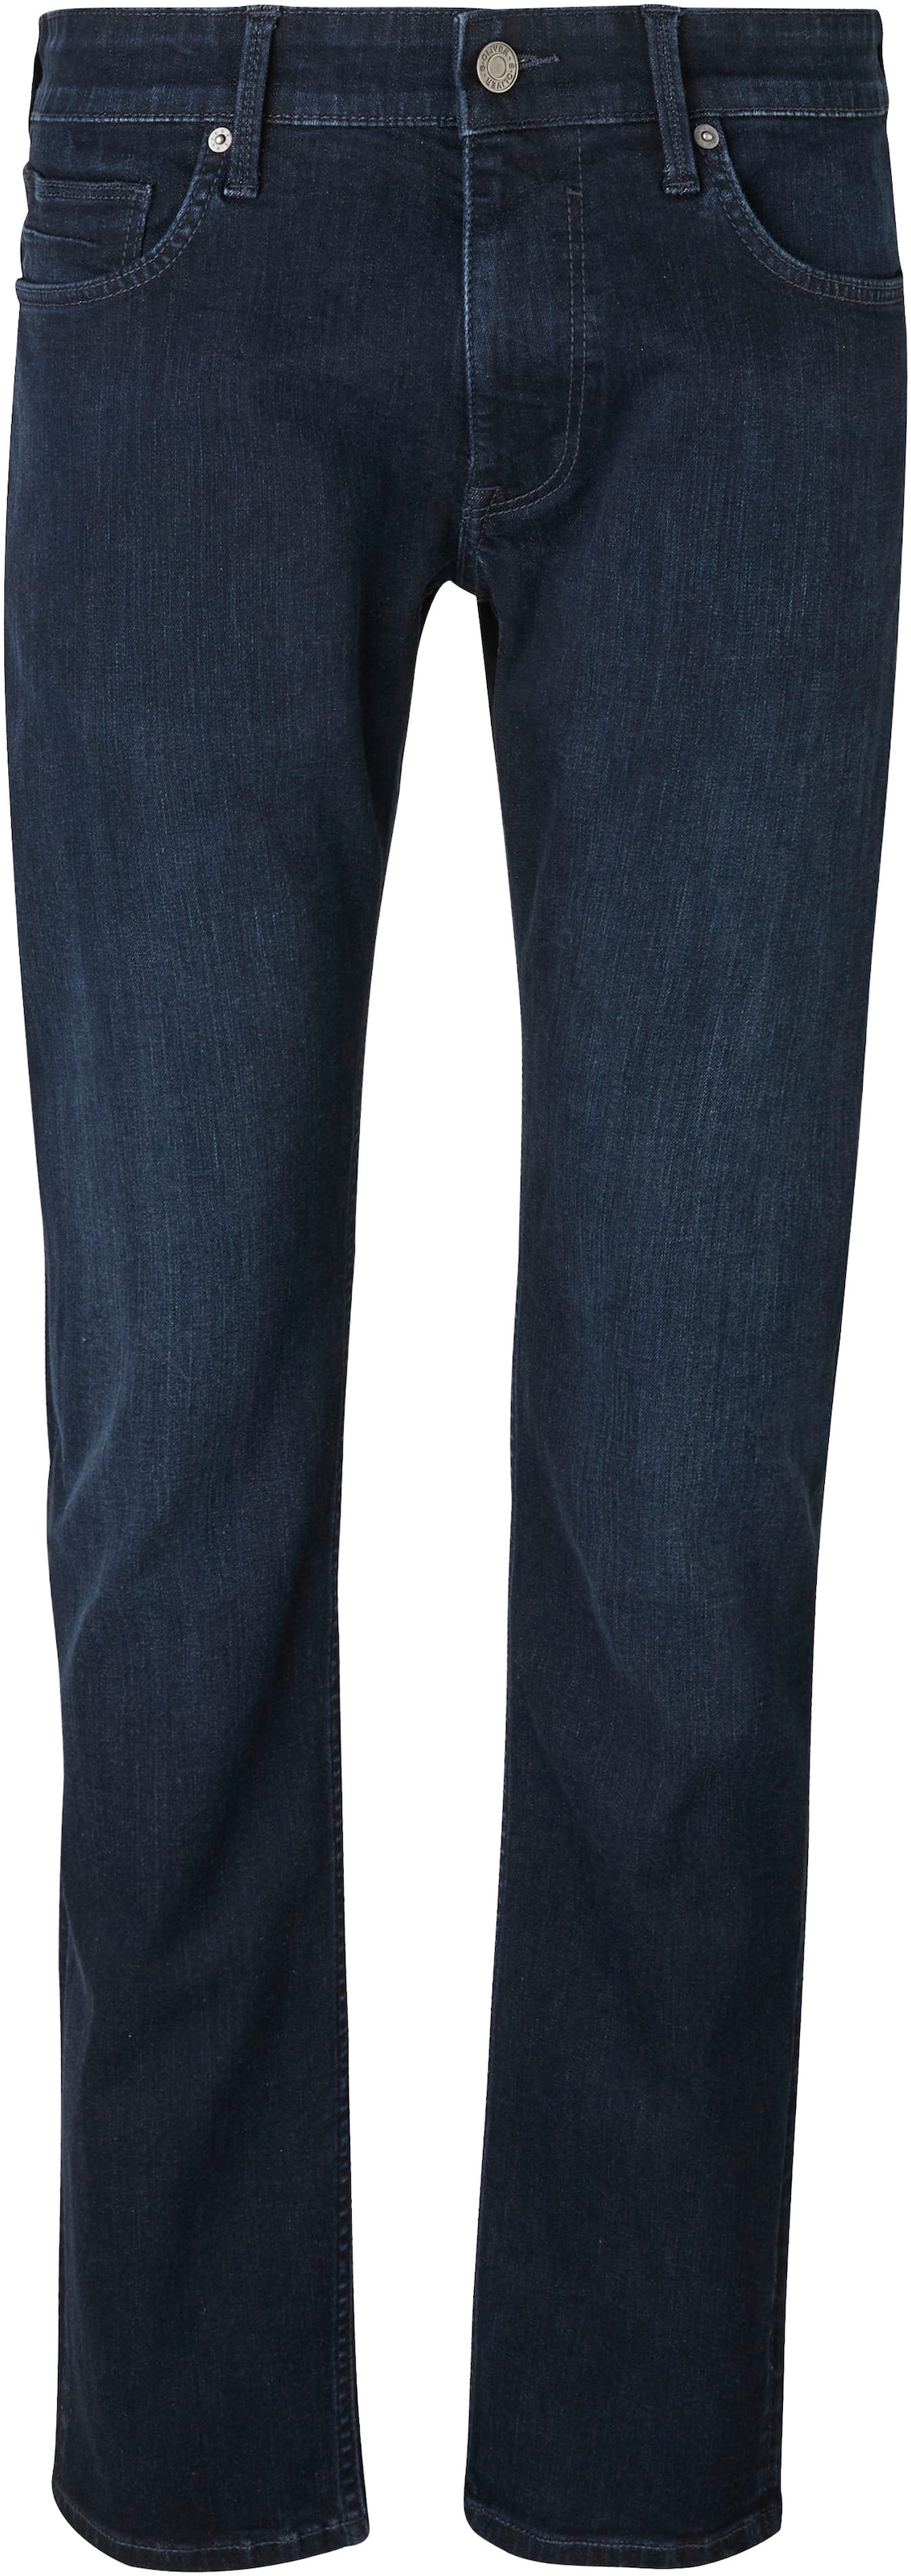 s.Oliver Bequeme Jeans, mit Gesäss- und Eingrifftaschen